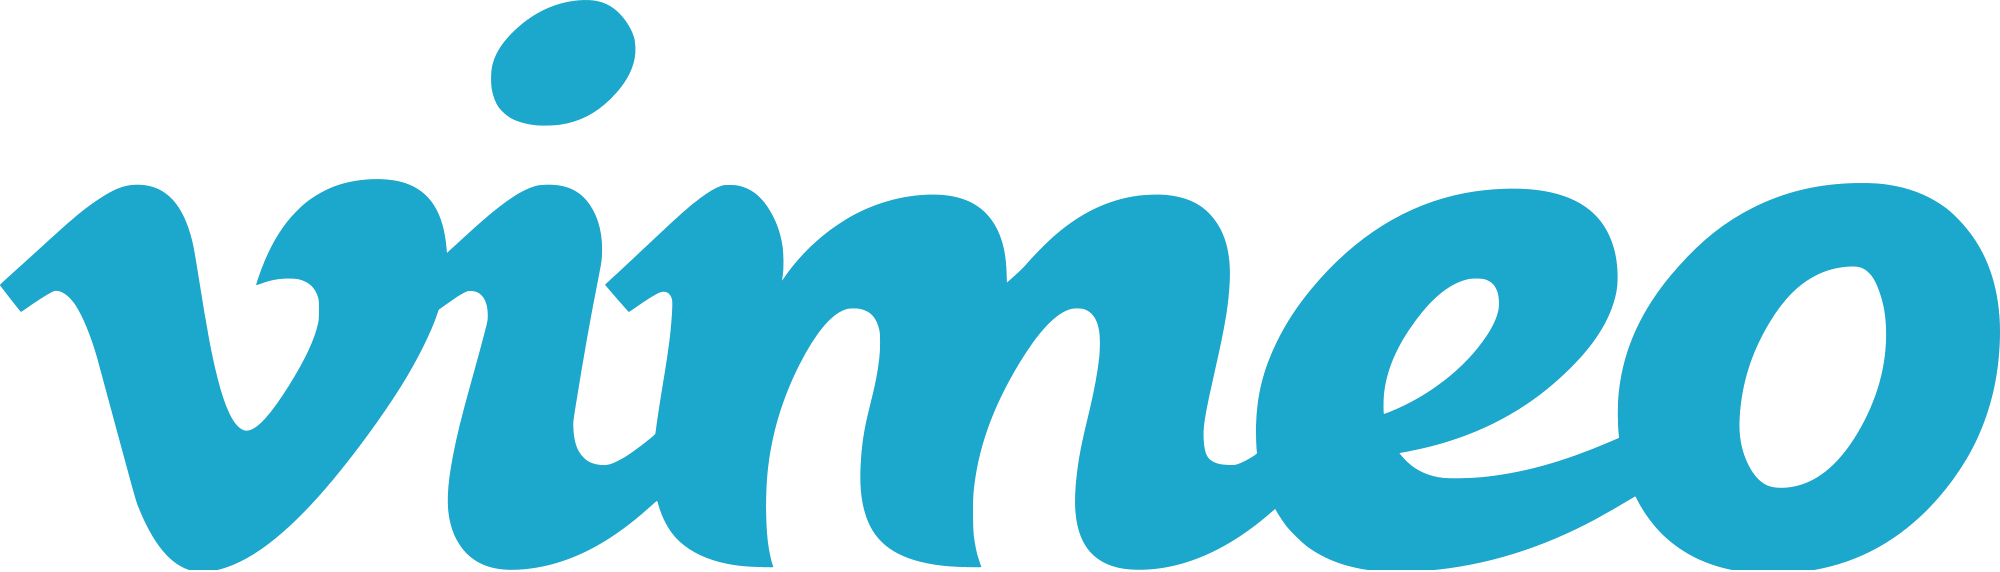 vimeo-logo.png